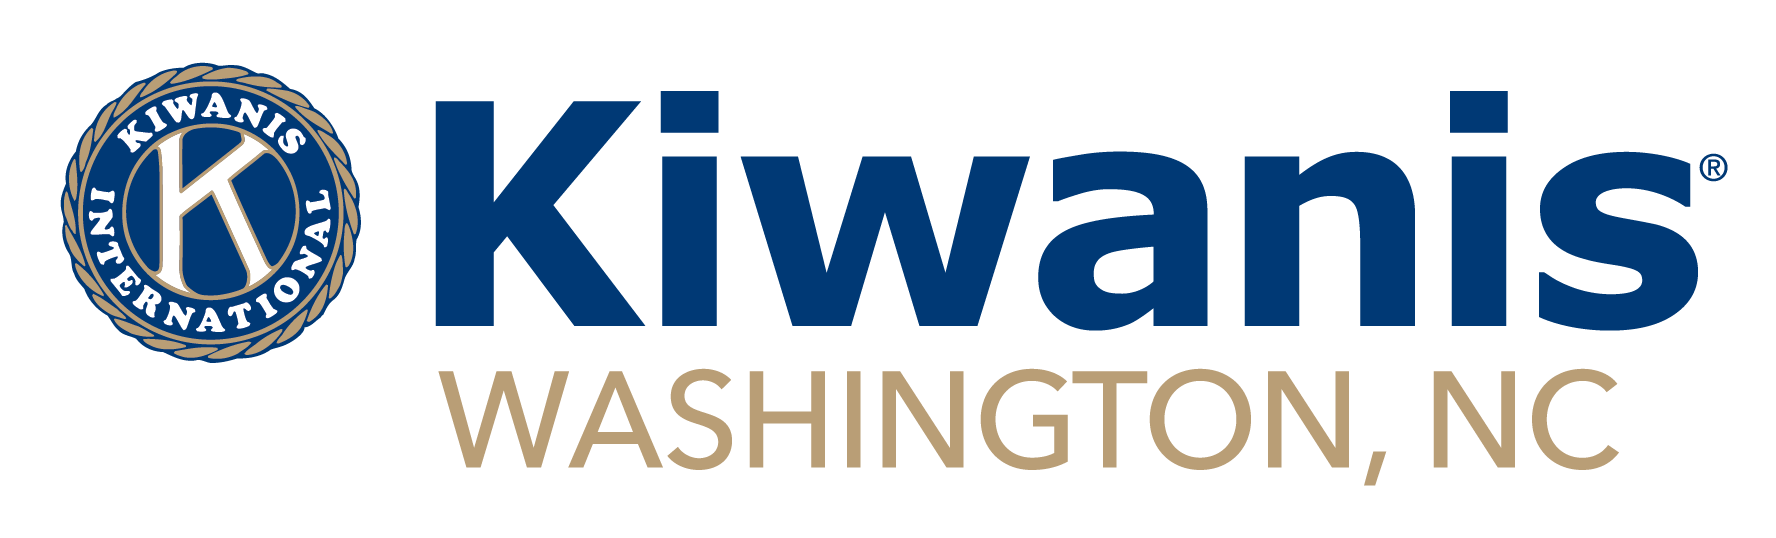 Kiwanis Club of Washington, NC